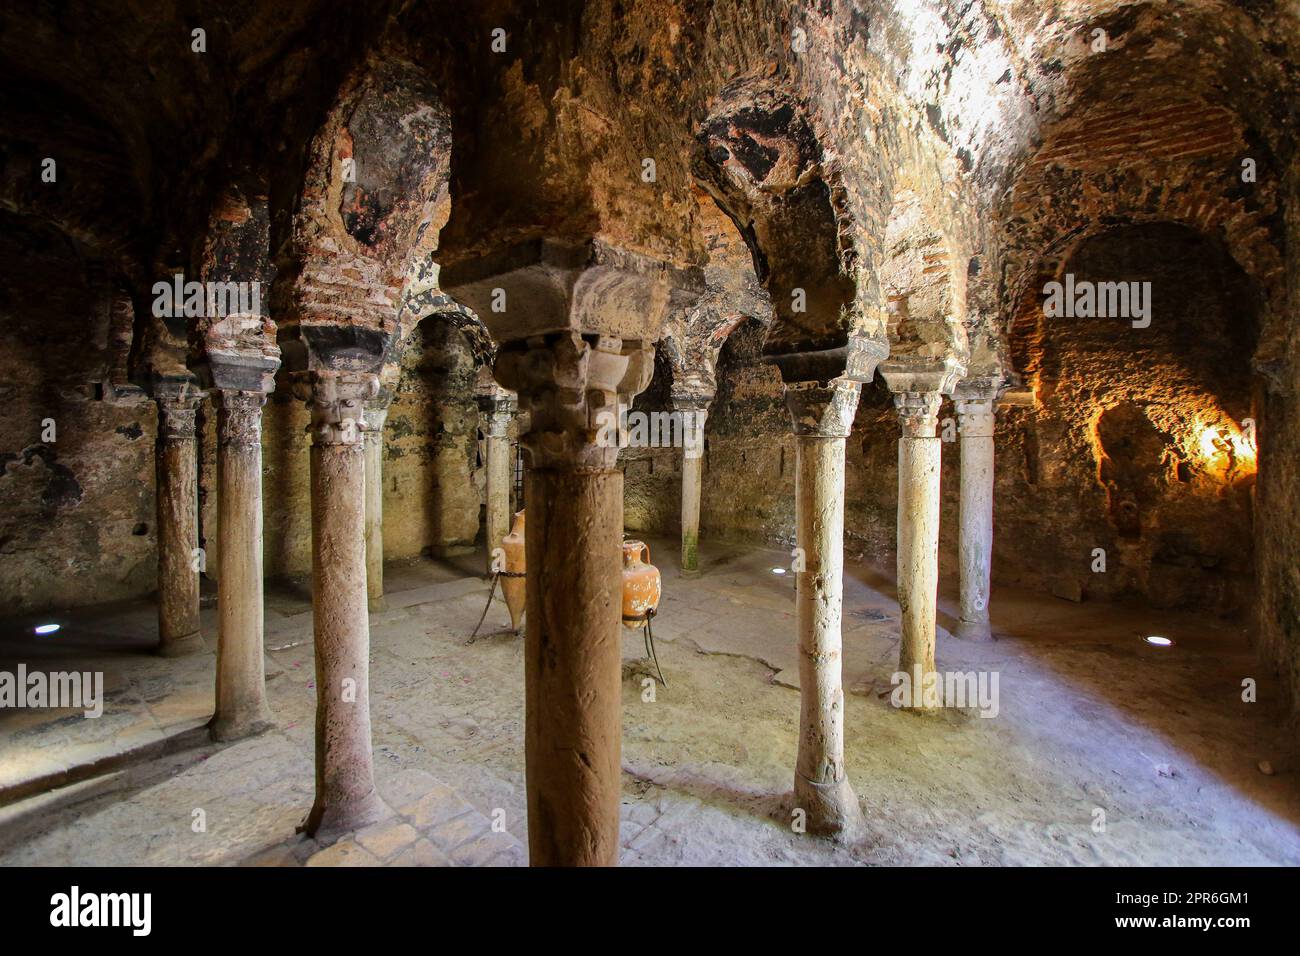 Alte byzantinische Steinkolonnaden im Badezimmer der arabischen Bäder von Palma von Mallorca - antikes maurisches Badehaus auf den Balearen, Spa Stockfoto